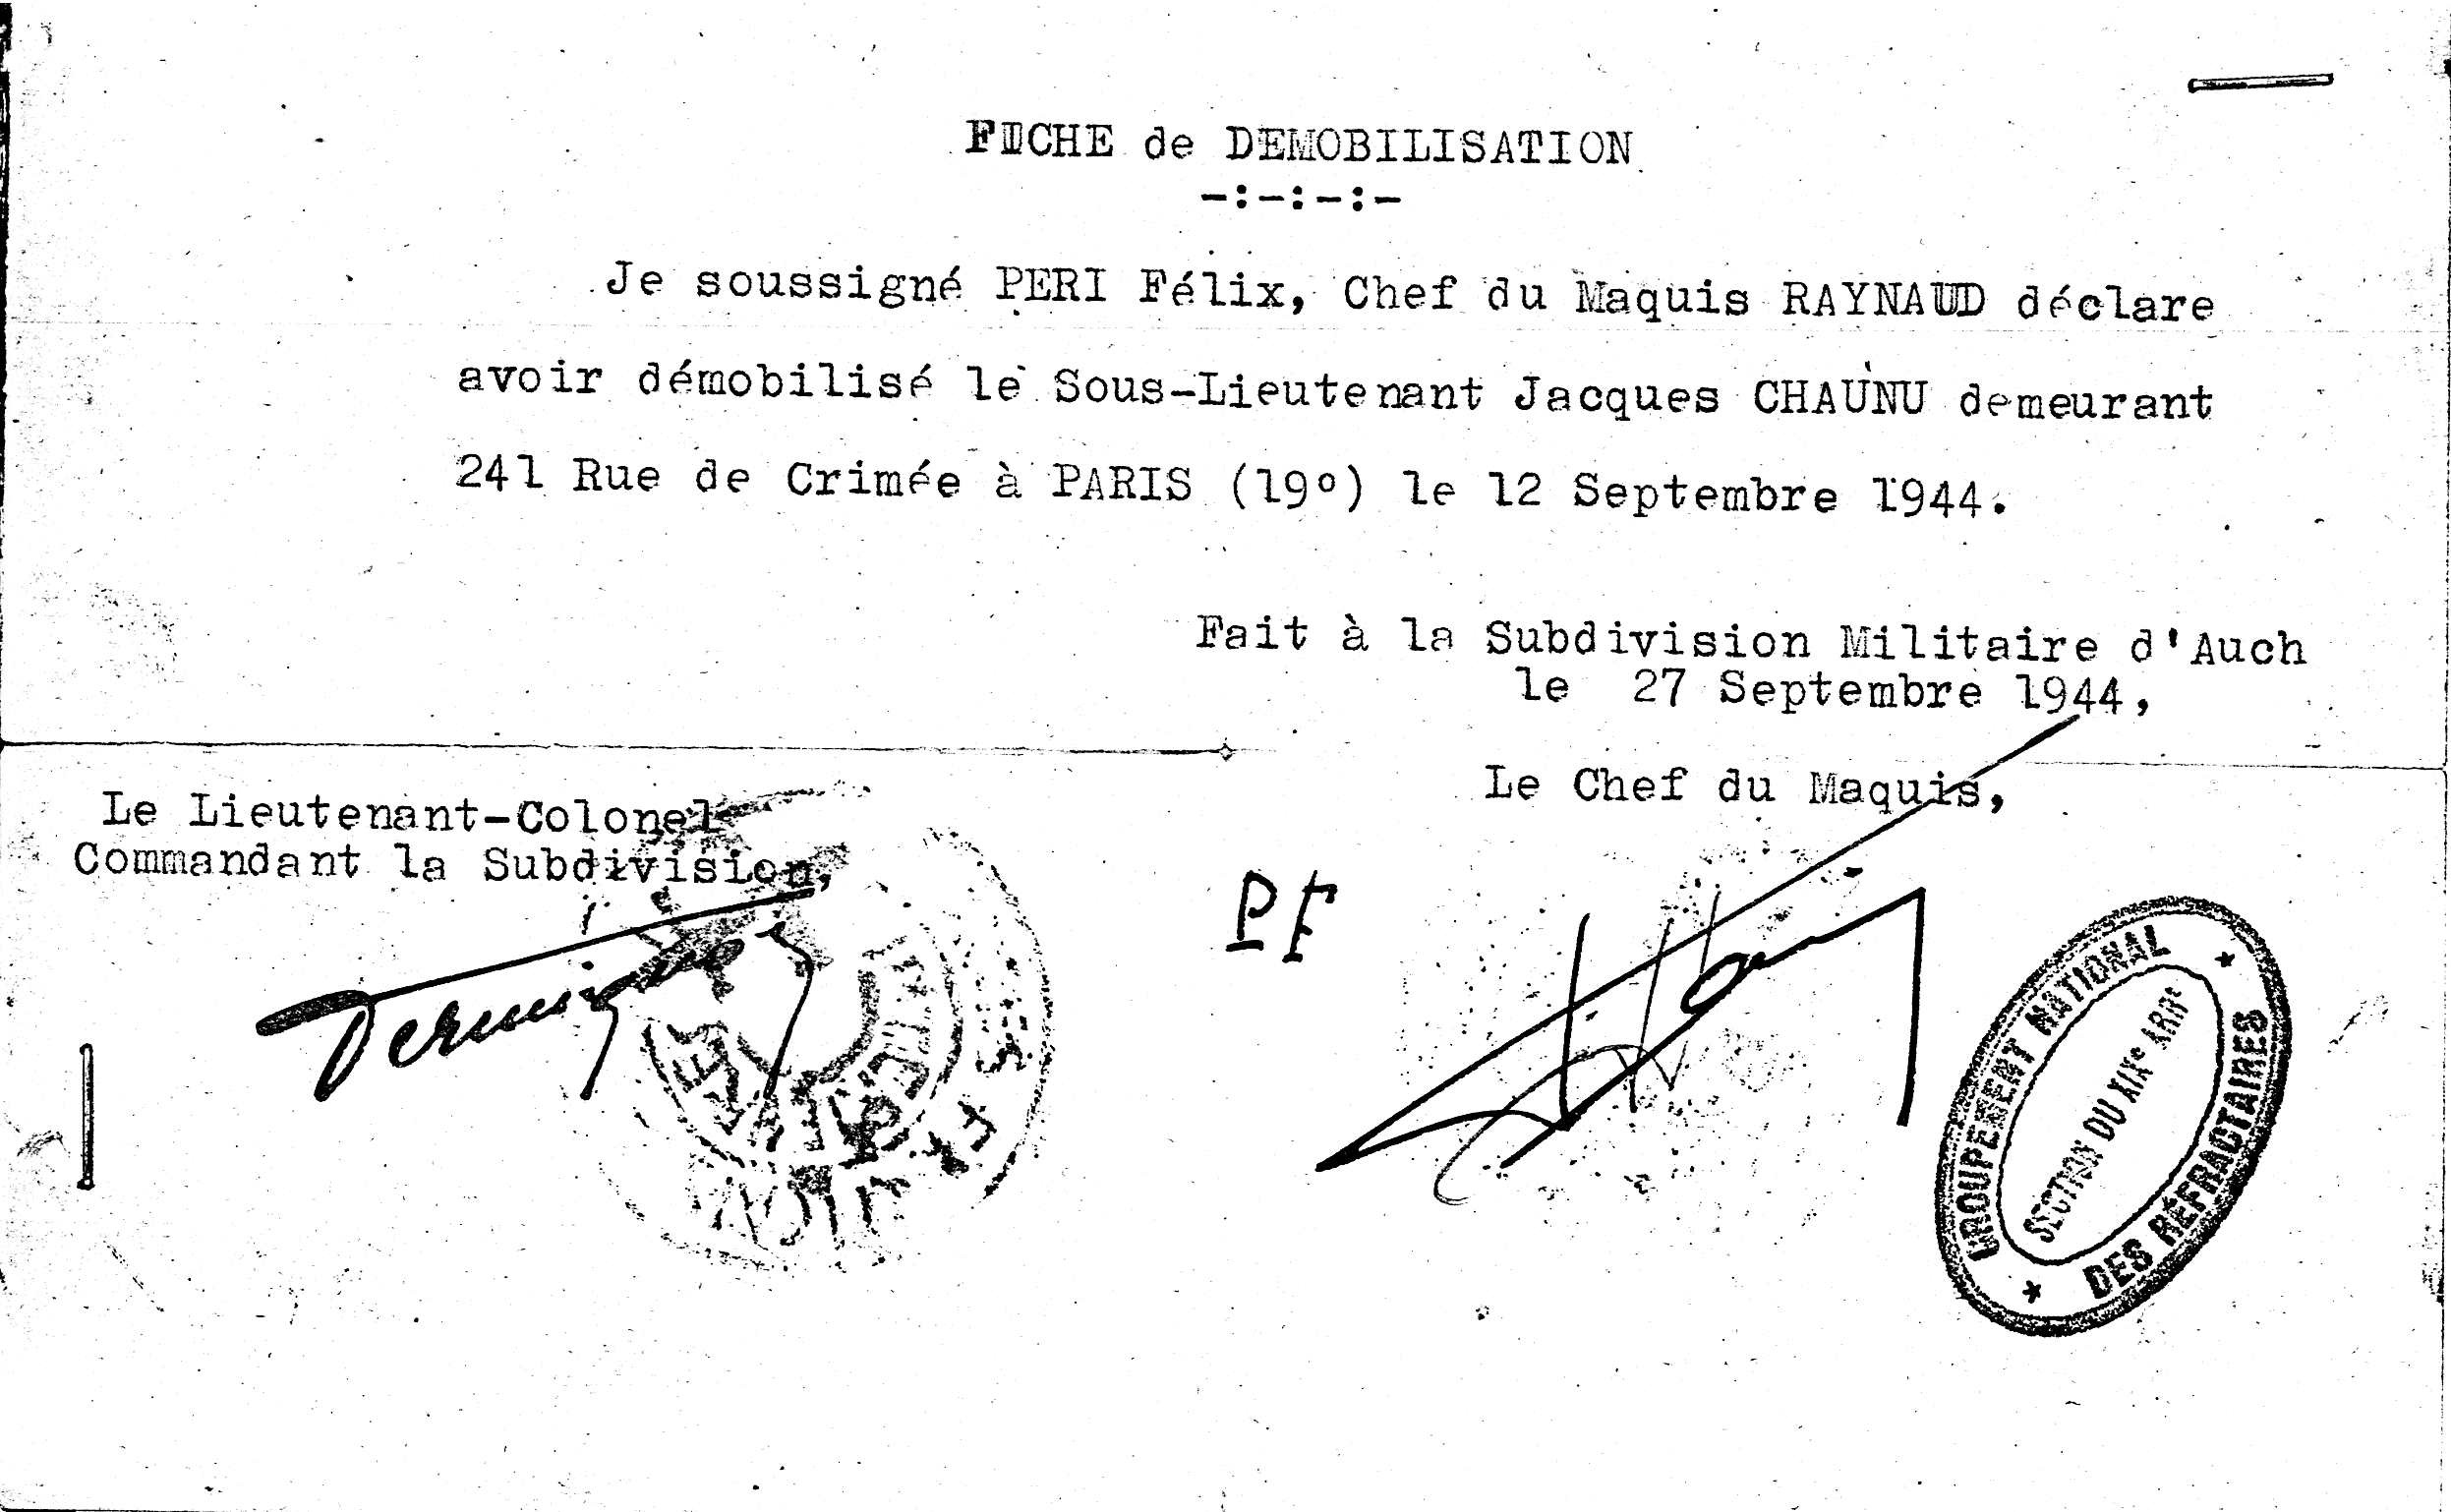 Fiche de démobilisation Jacques Chaunu 12 septembre 1944.JPG